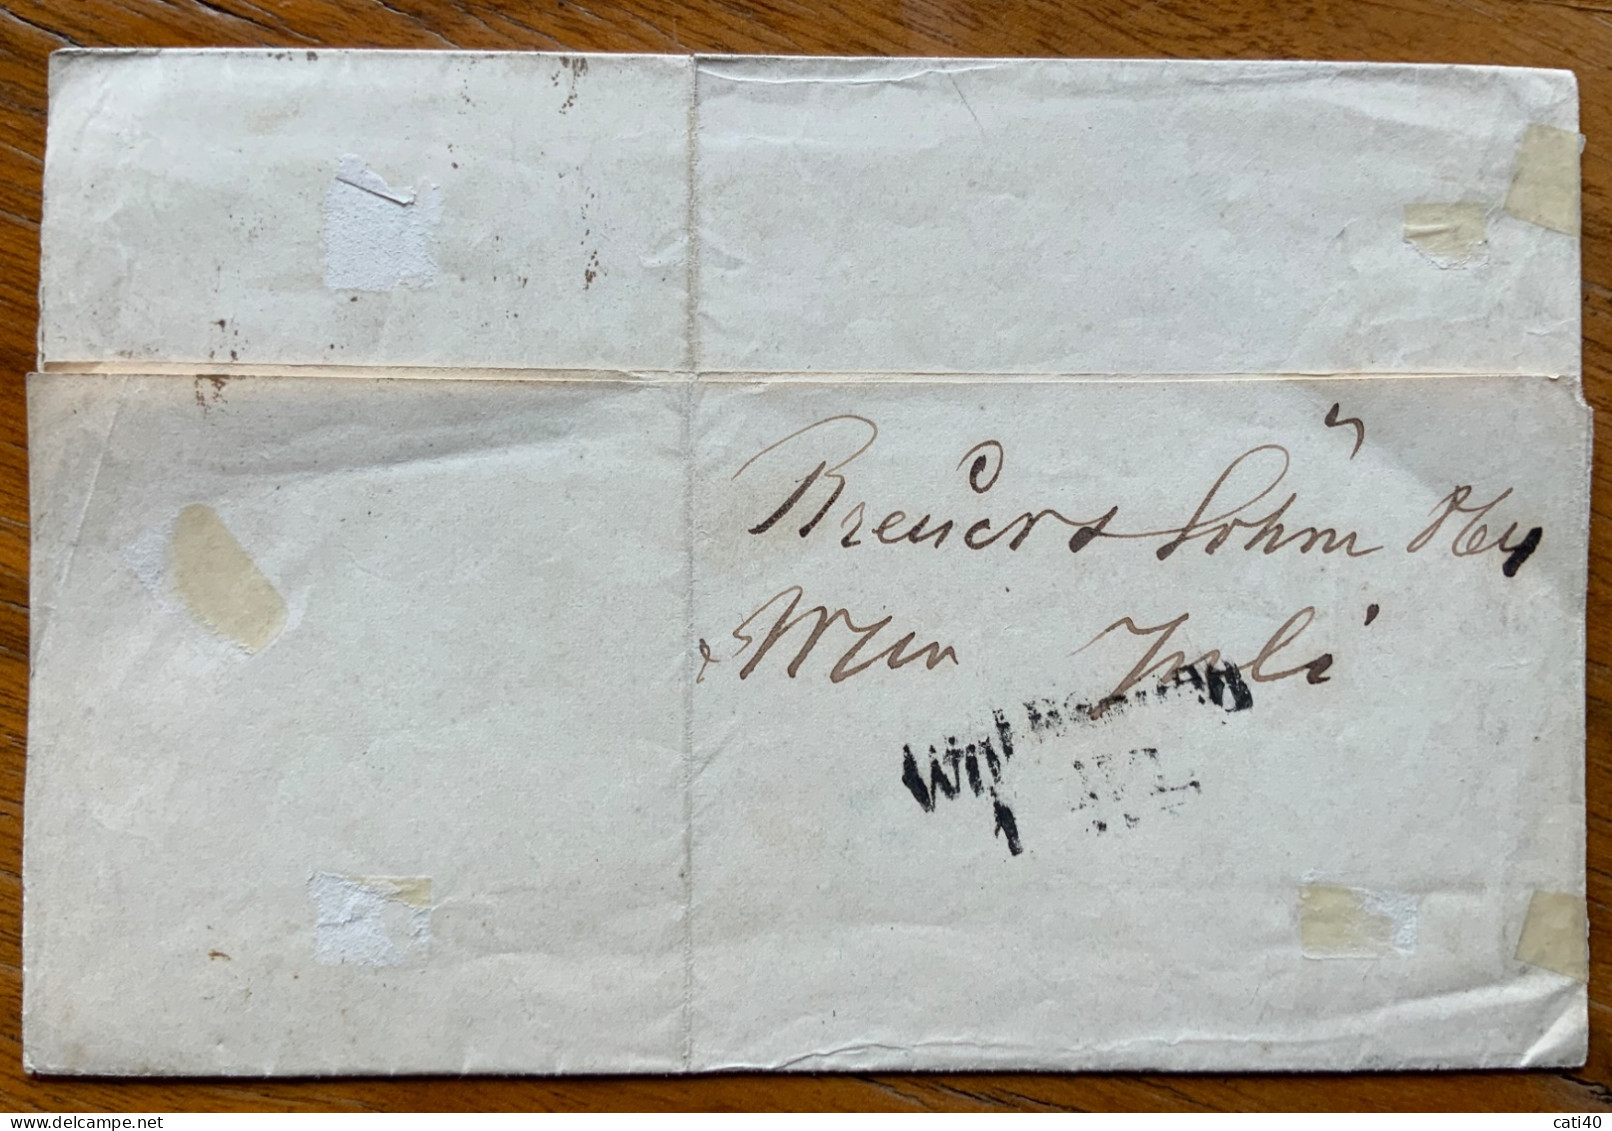 AUSTRIA - 2 K Giallo Su Lettera A Stampa Da WIEN 30/6/ 1864  Per  WOLFSBERG - Royal Families